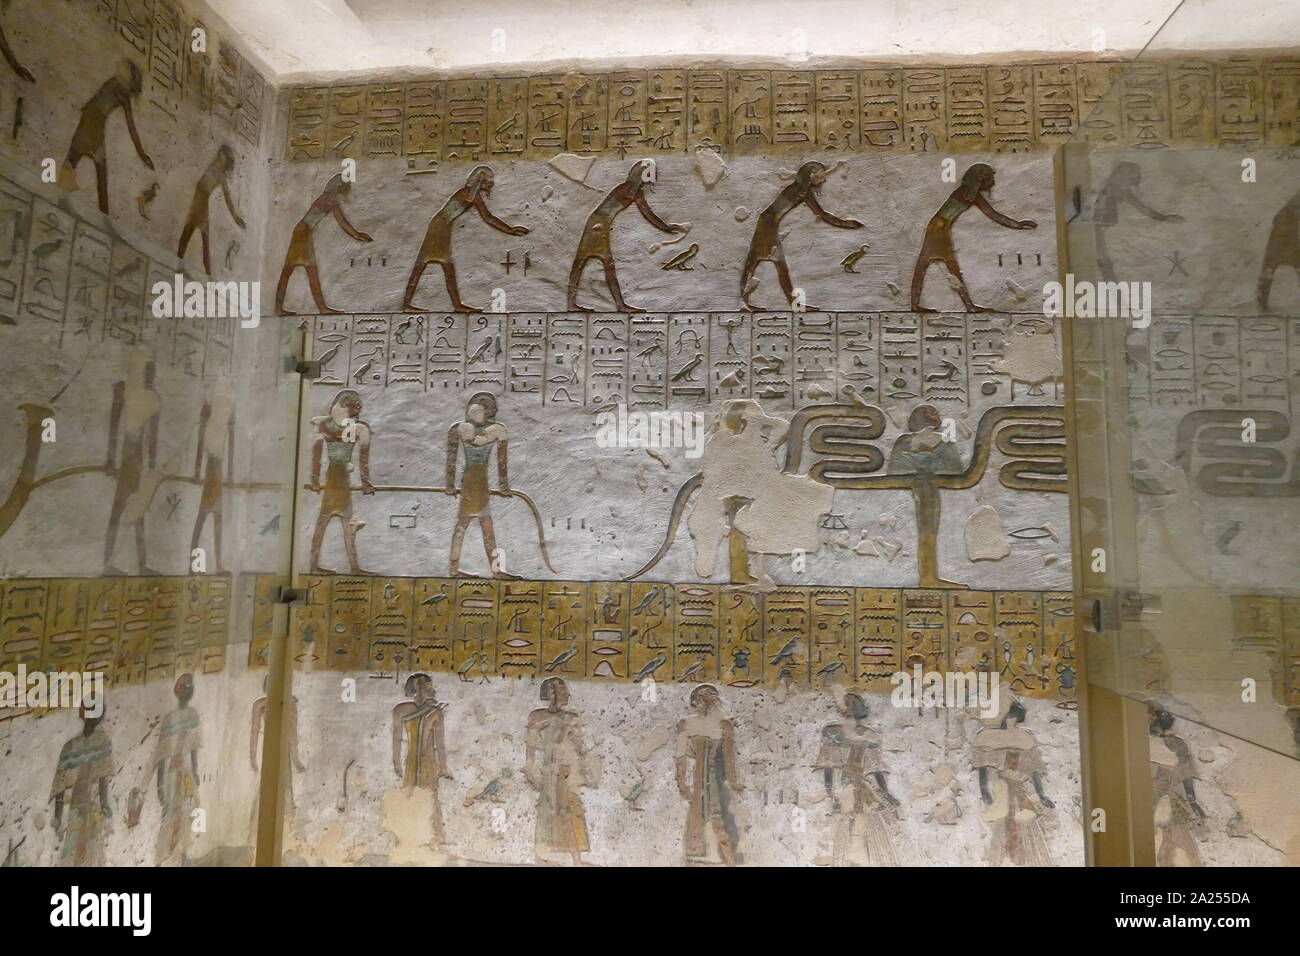 Peintures murales dans la Tombe KV11, est le tombeau de pharaon égyptien Ramsès III. Situé dans la vallée principale de la Vallée des Rois, la tombe a été initialement lancé par Setnakhte. Usimare Ramsès III (également écrit Ramsès et Ramsès) a été le deuxième Pharaon de la xxe dynastie. Il est considéré comme le dernier monarque du nouveau royaume d'exercer aucune autorité sur l'Égypte. Banque D'Images